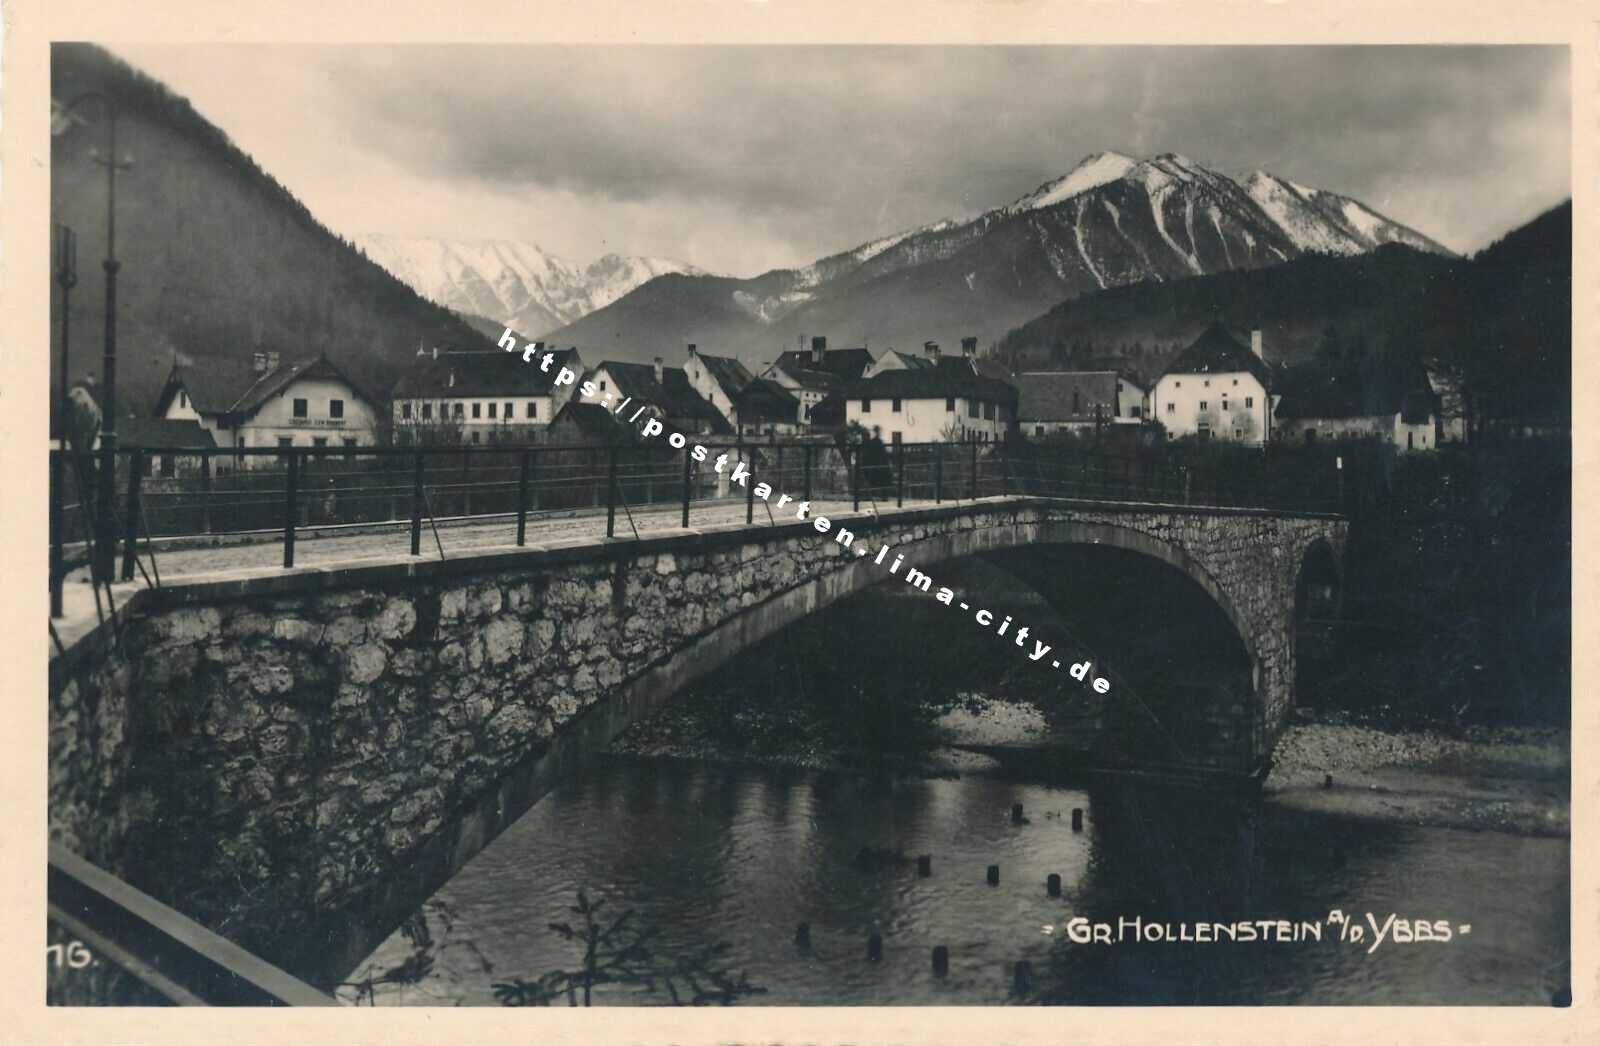 Groß Hollenstein 1936